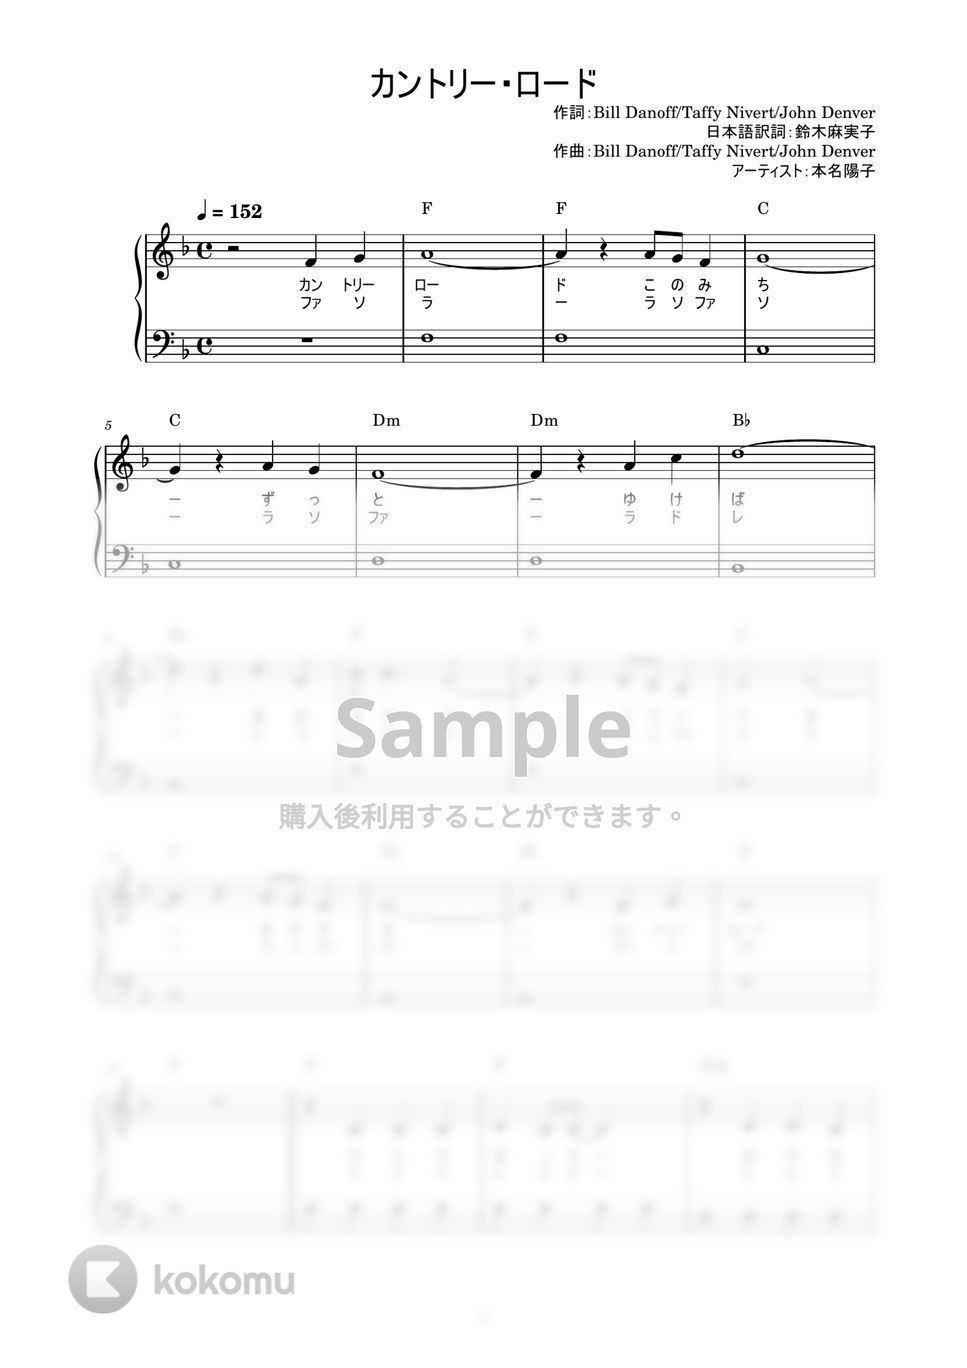 本名陽子 - カントリー・ロード (かんたん / 歌詞付き / ドレミ付き / 初心者) by piano.tokyo